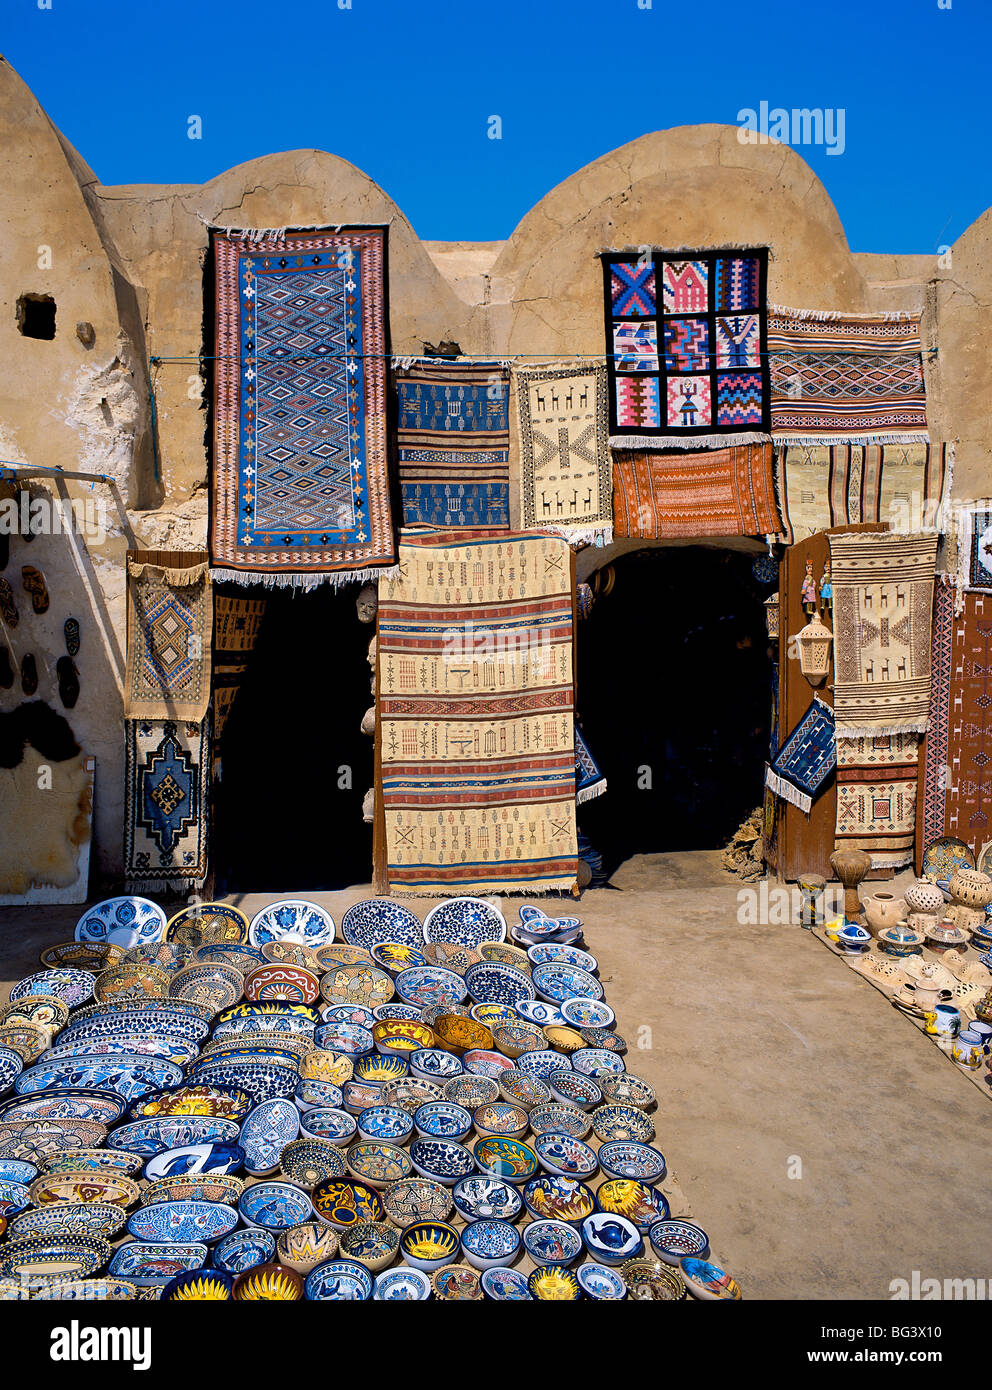 Traditionelle Keramik und Teppich-Shop, Tunesien, Nordafrika, Afrika Stockfoto